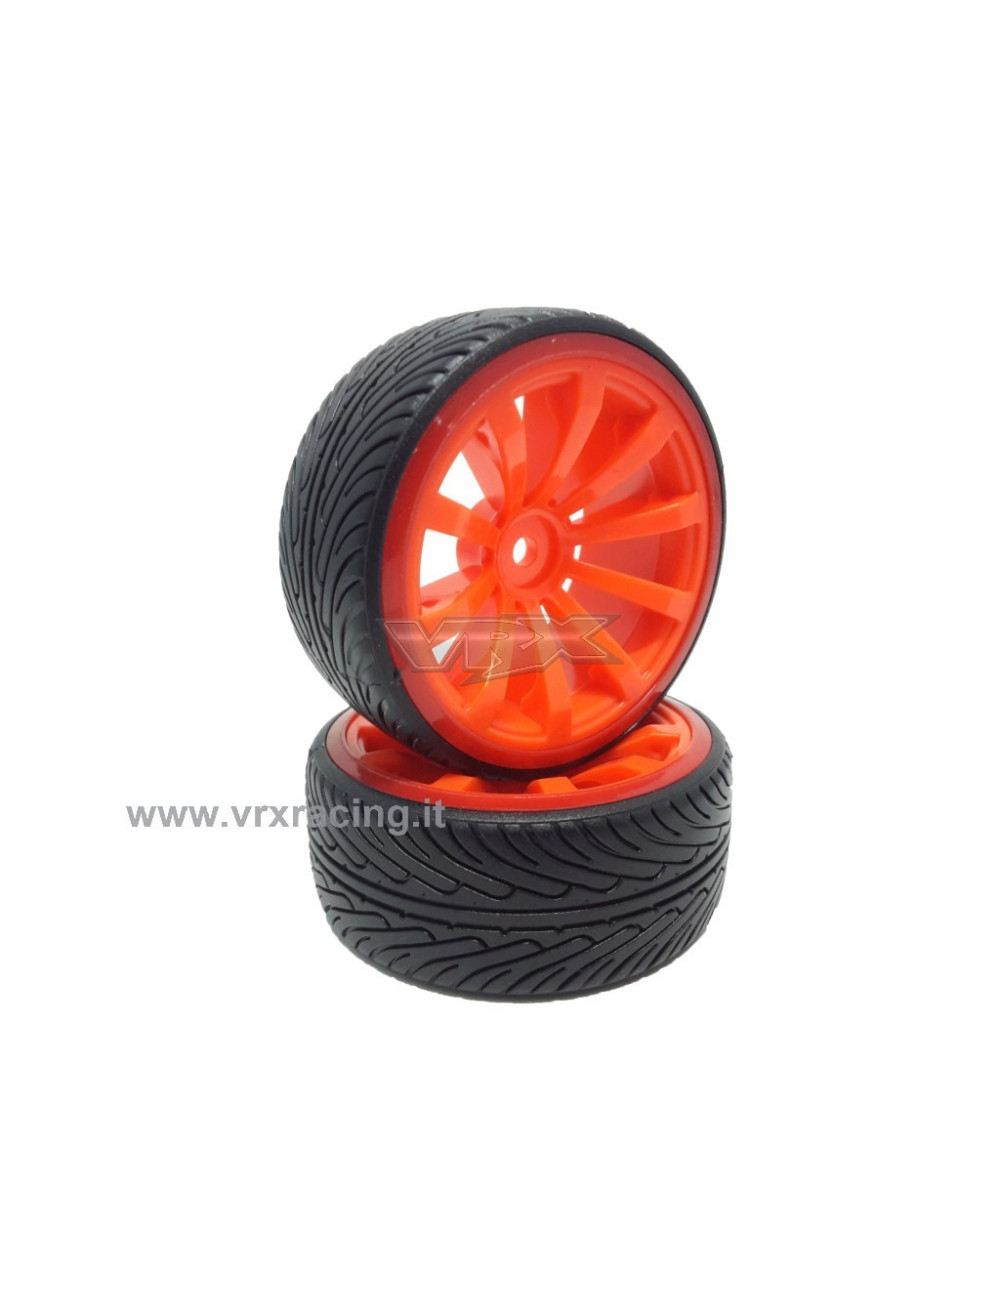 VRX Coppia ruote complete di inserto 1/10 drift cerchio arancione VRX